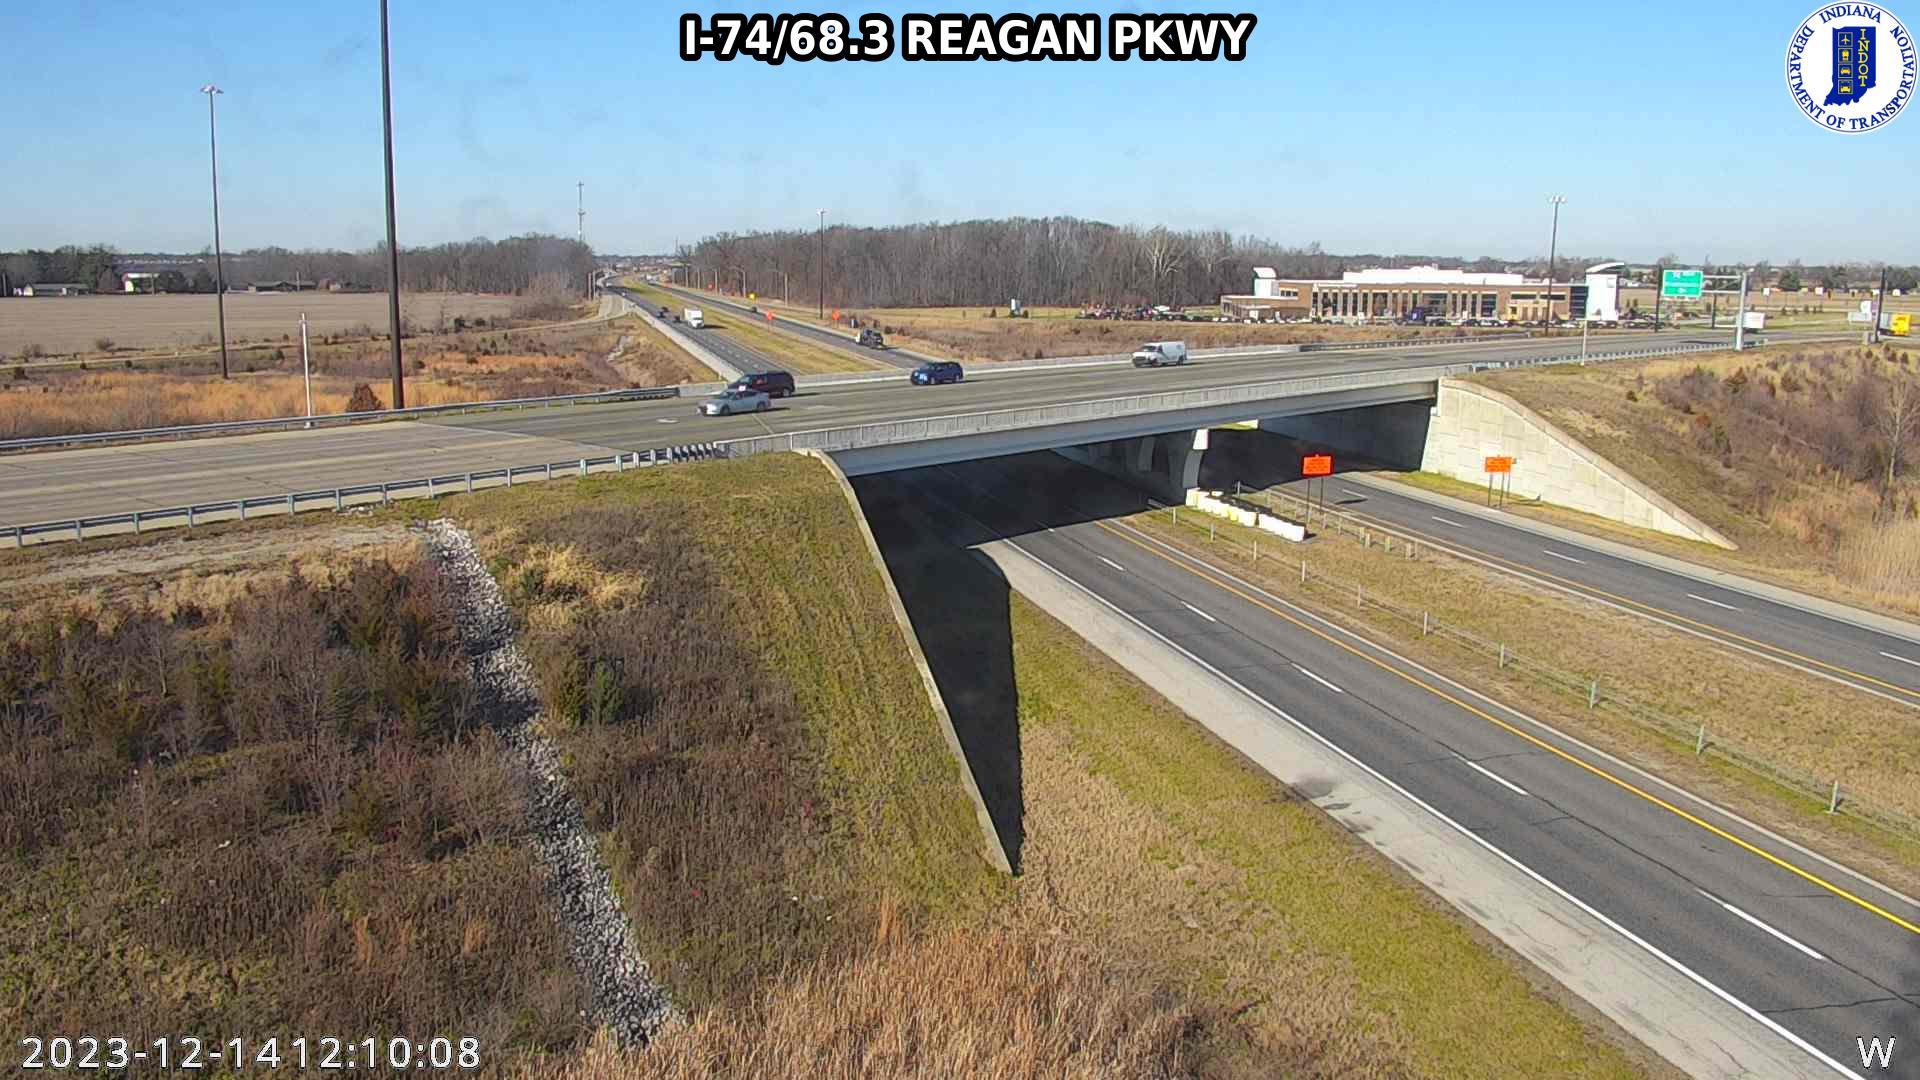 Brownsburg: I-74: I-74/68.3 REAGAN PKWY Traffic Camera